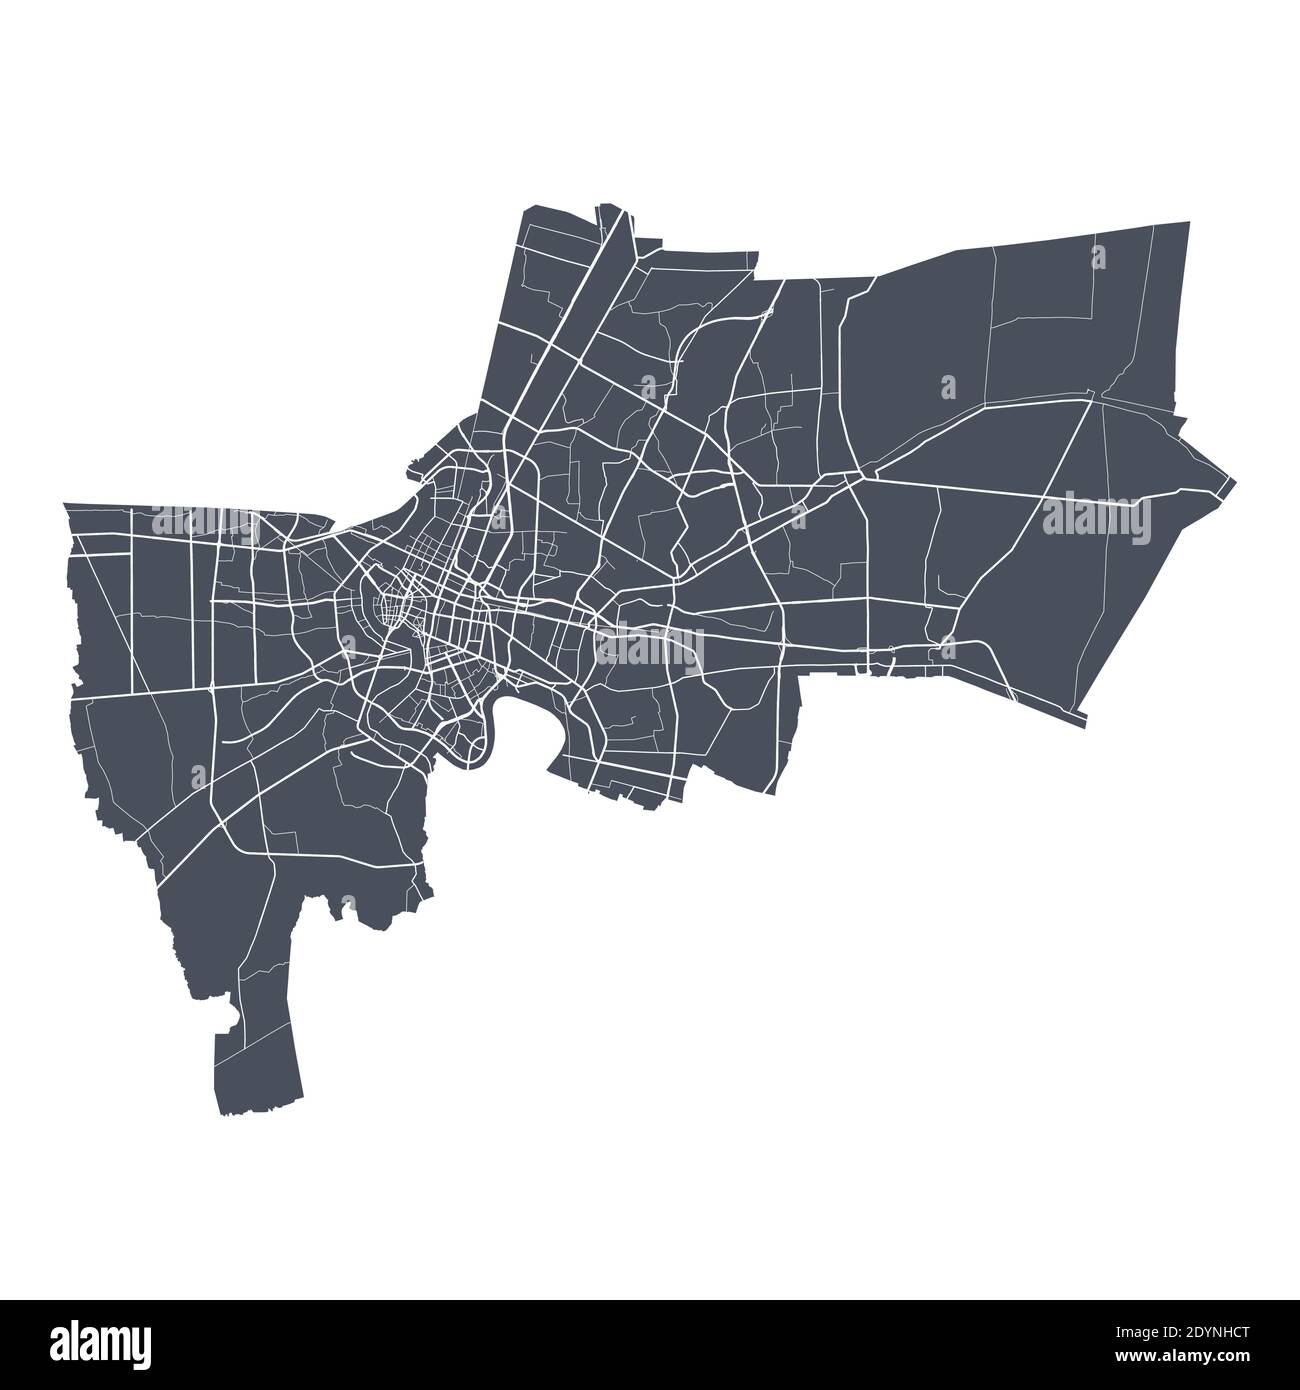 Bangkok mappa. Mappa vettoriale dettagliata dell'area amministrativa della città di Bangkok. Poster del paesaggio urbano vista aria metropolitana. Terra scura con strade bianche, strade e. Illustrazione Vettoriale